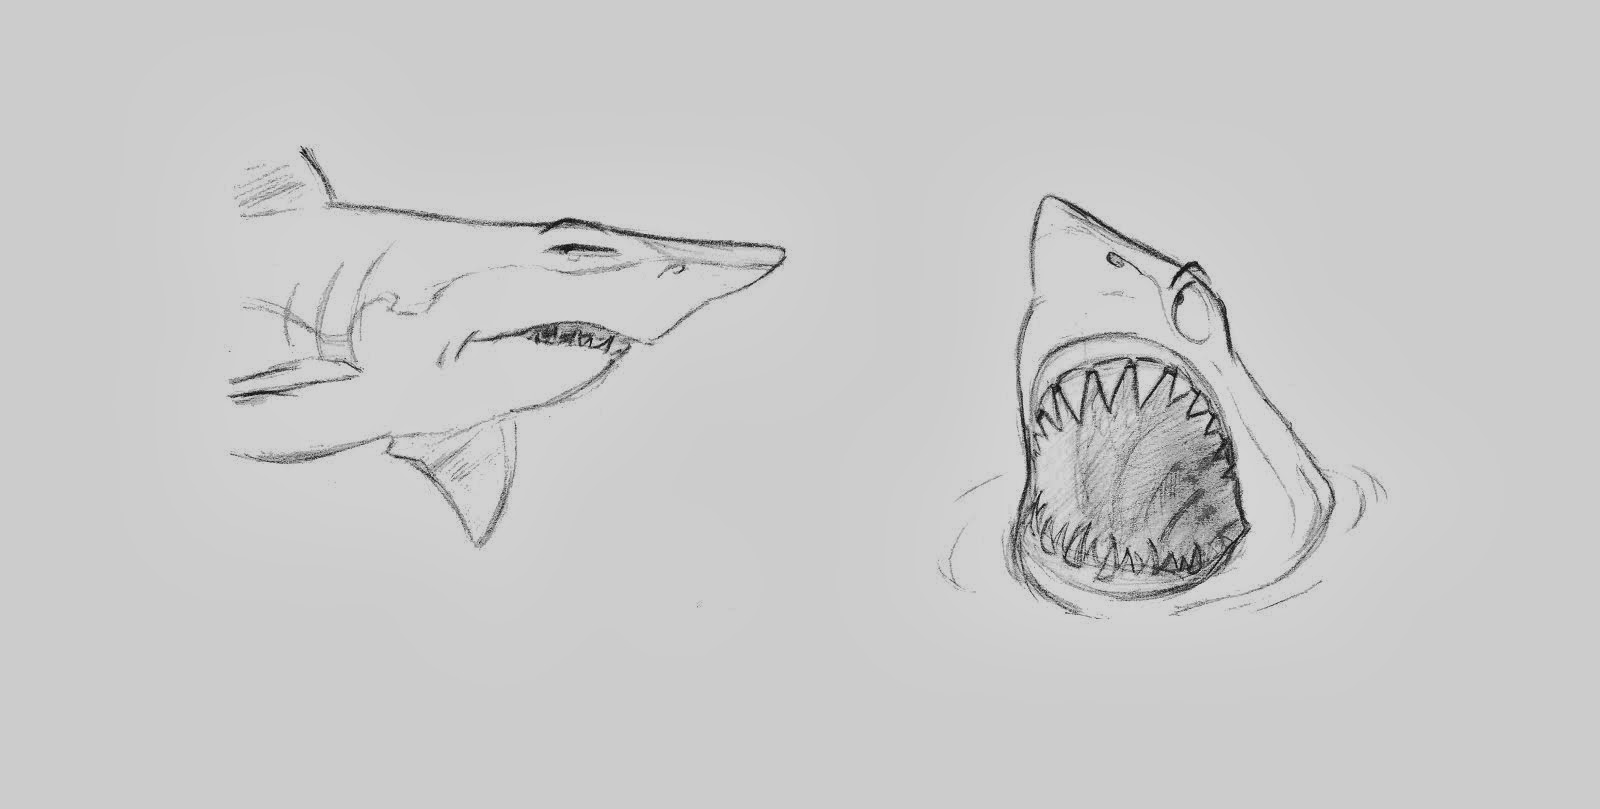 Shark sketch design, 2012